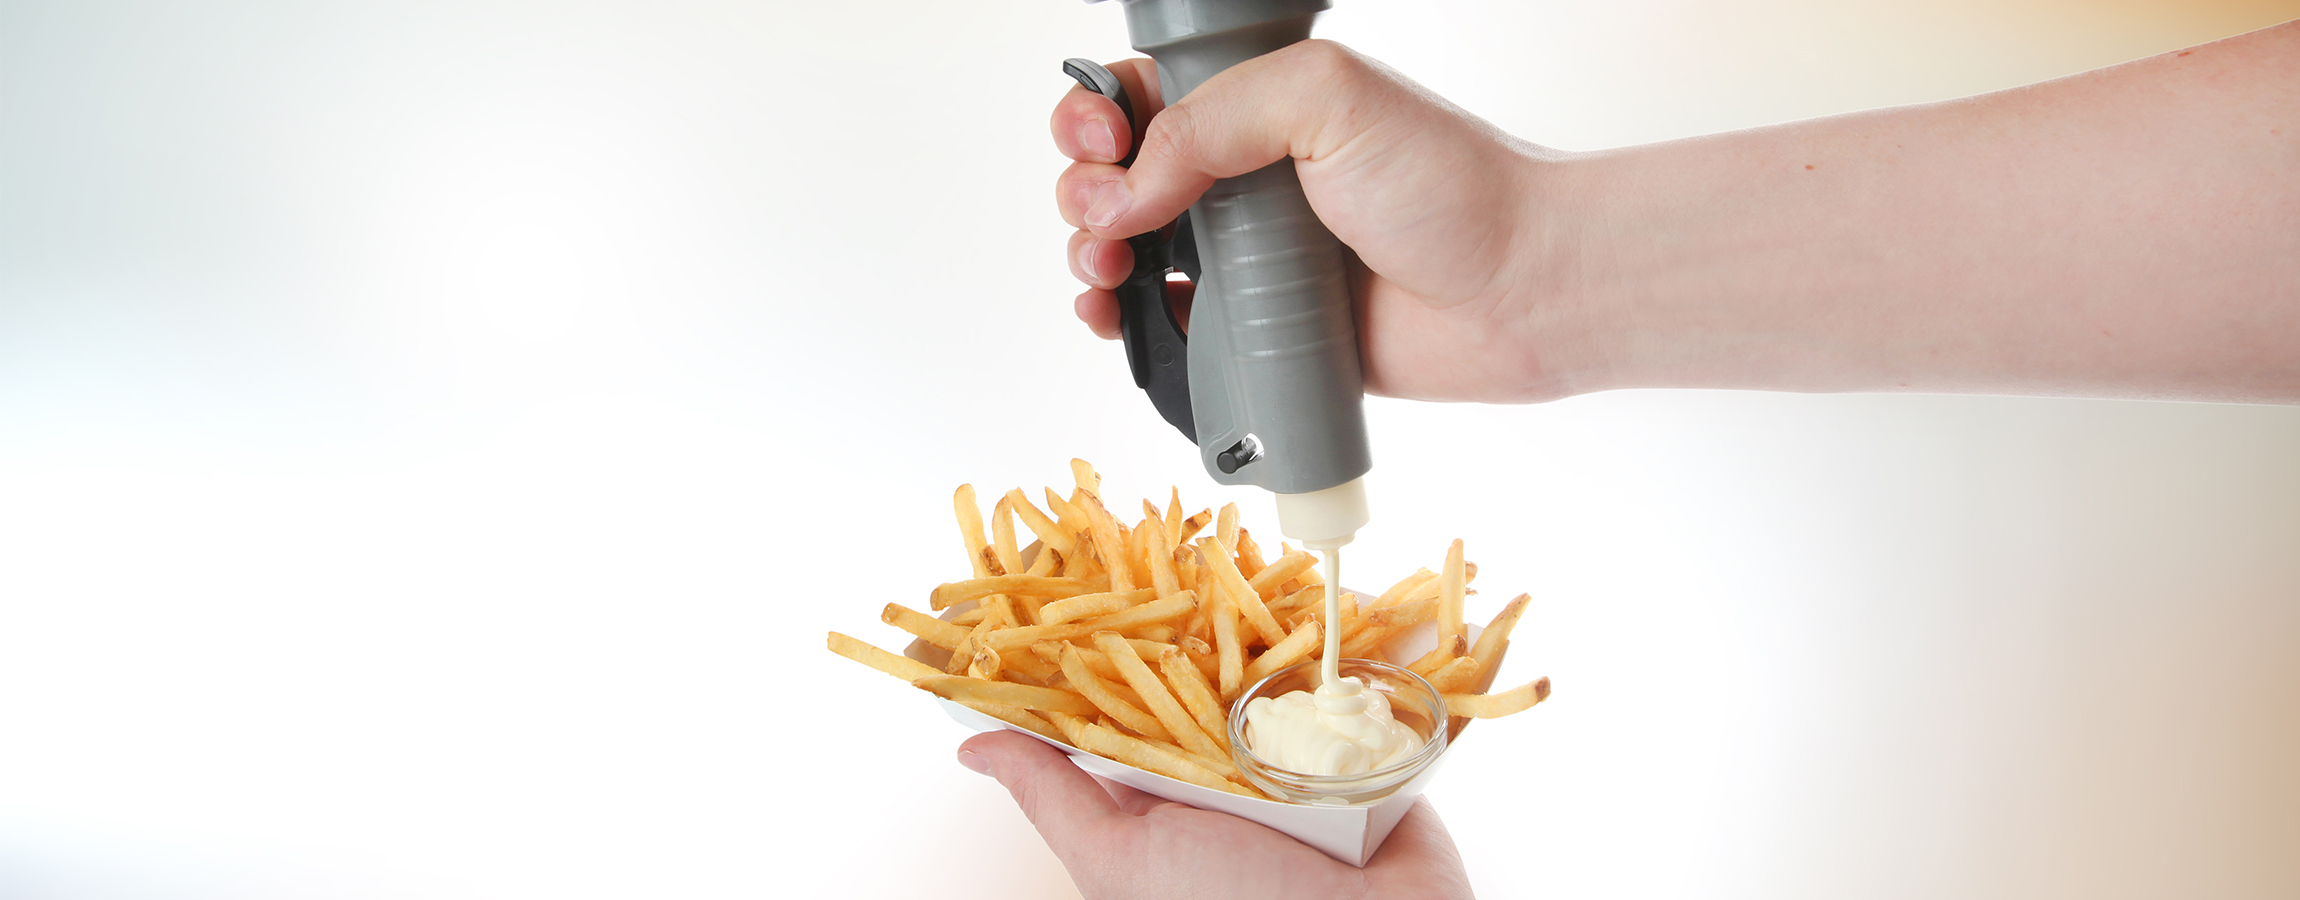 Portion Pump-fries-condiments